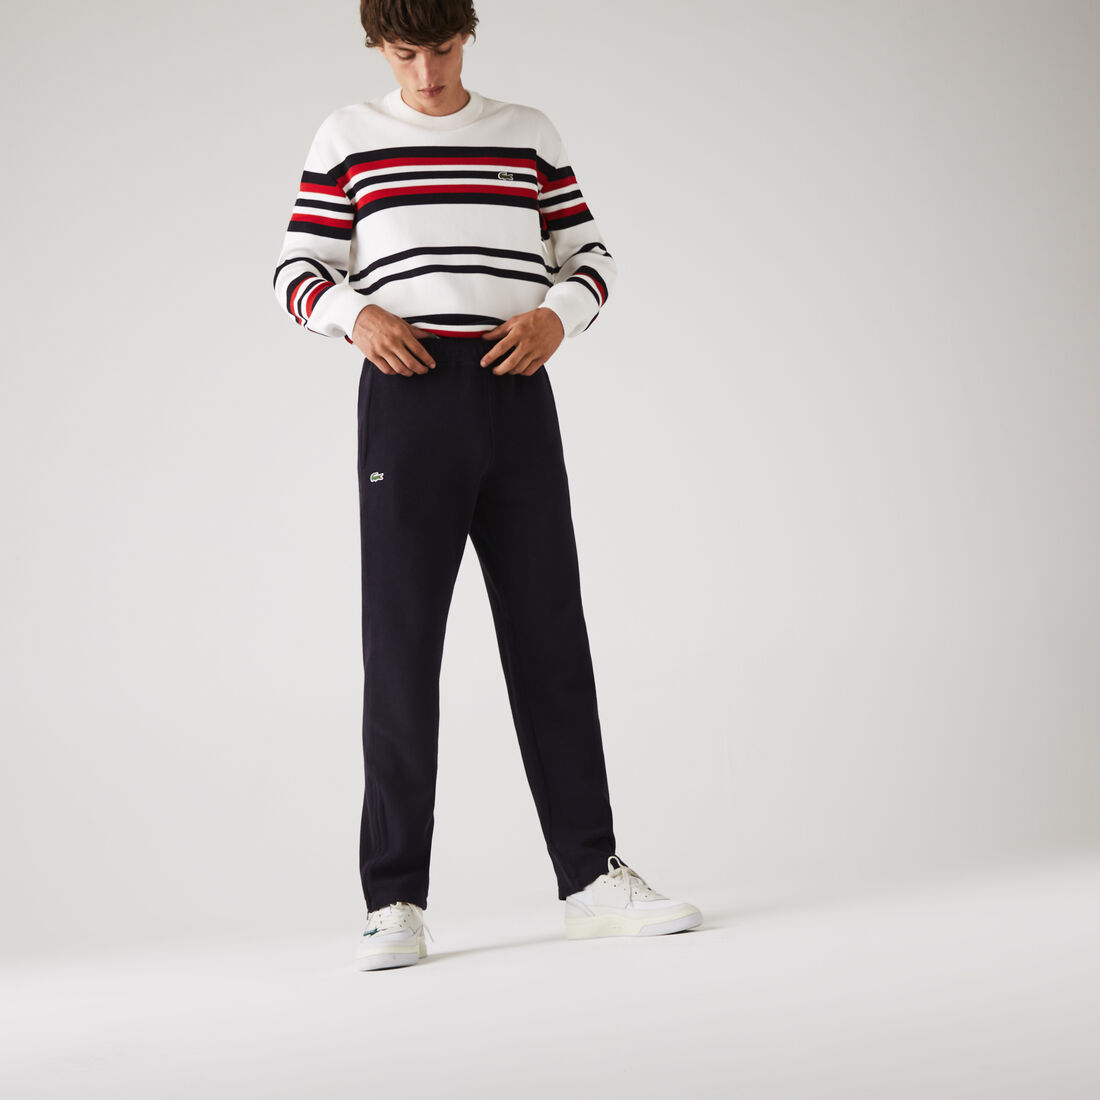 Men's Organic Cotton Piqué jogging pants